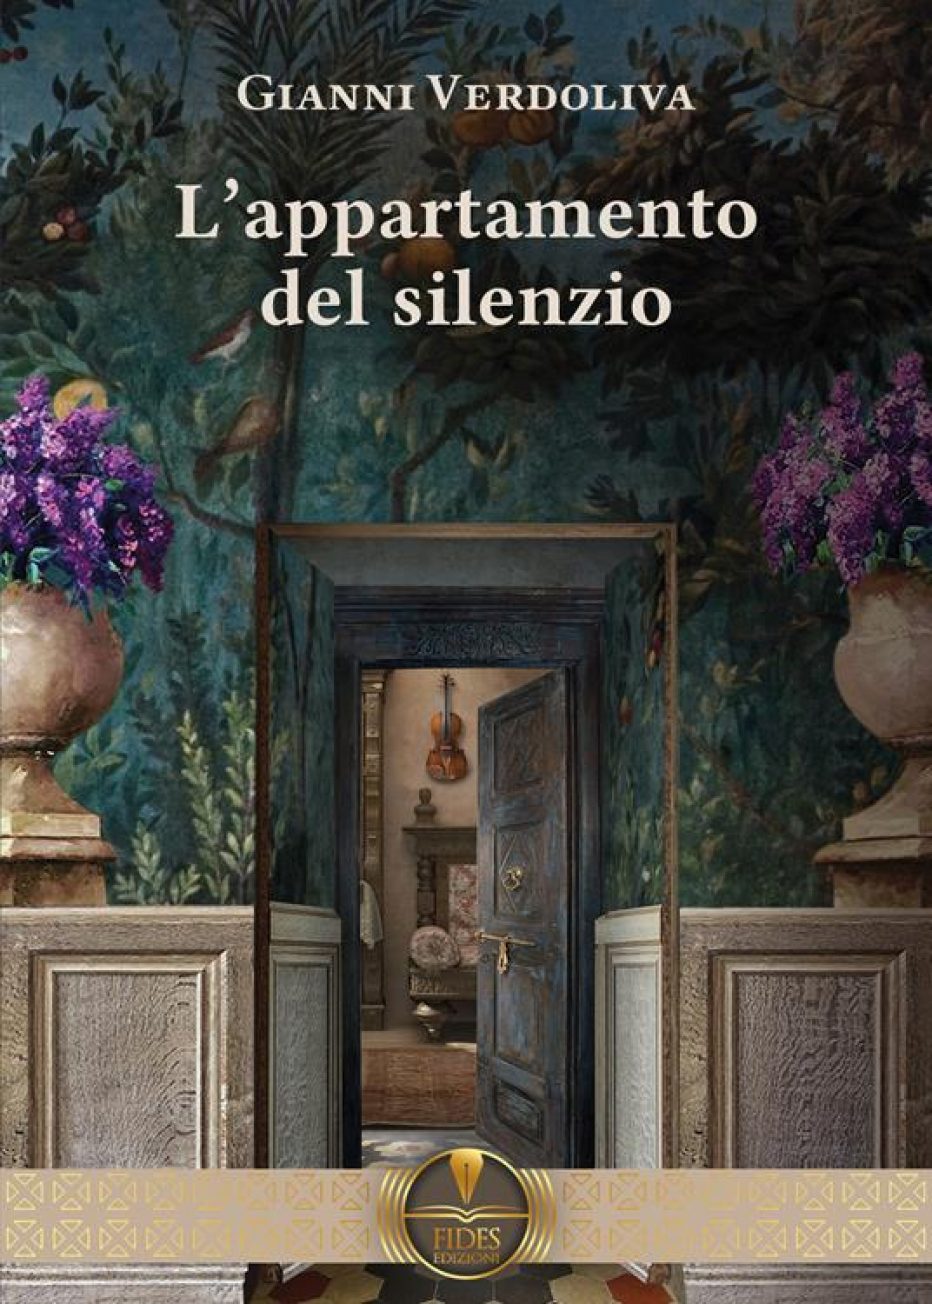 “L’appartamento del silenzio” il nuovo romanzo di Gianni Verdoliva